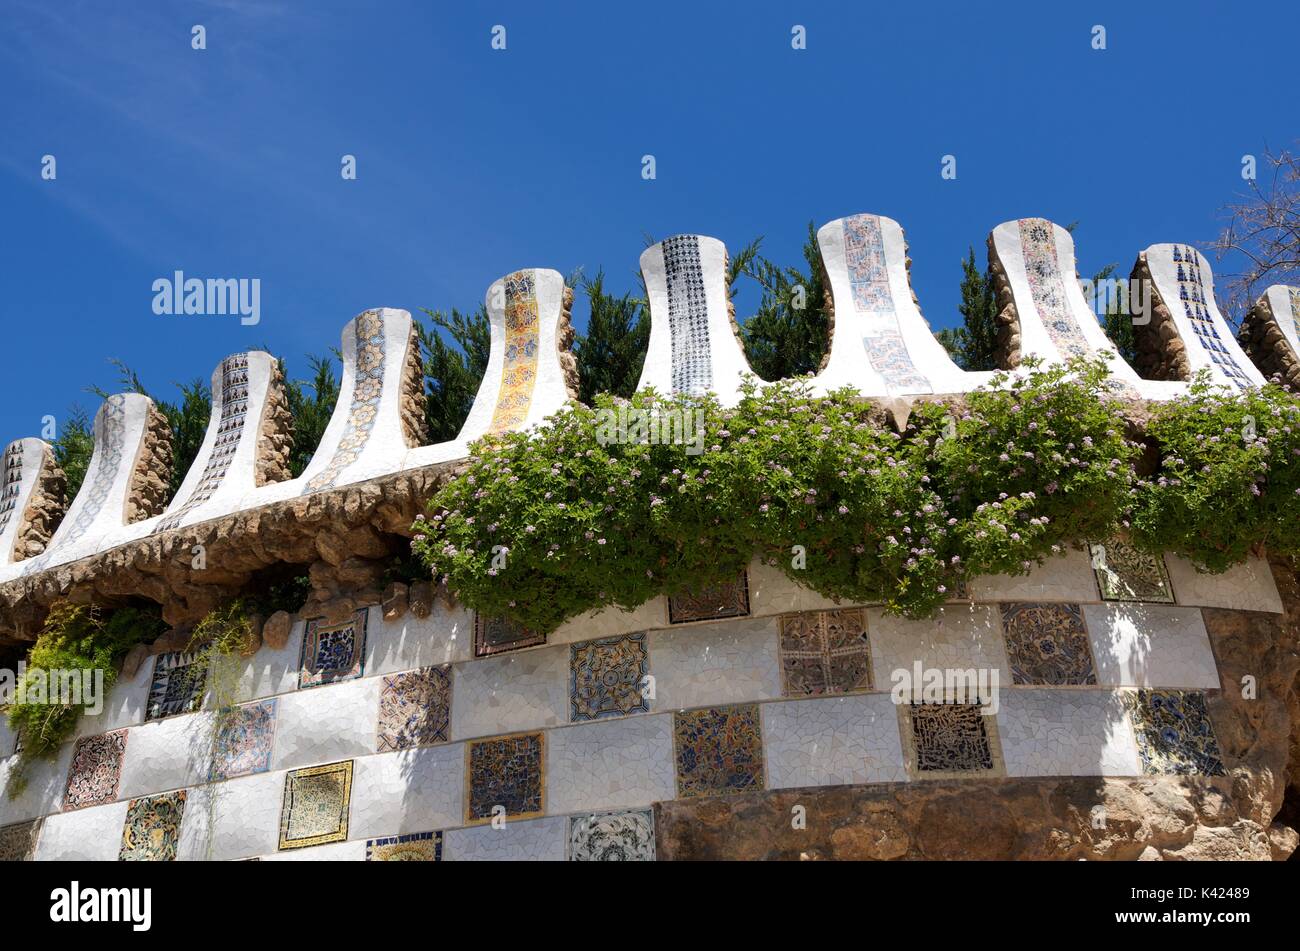 Barcelona, Spanien - 1. Mai 2012: Keramische Wand Mosaik in der Park Güell. Durch Künstler Antonio Gaudí entworfen, ist eines der am meisten besuchten Orte in Barcelona. Stockfoto